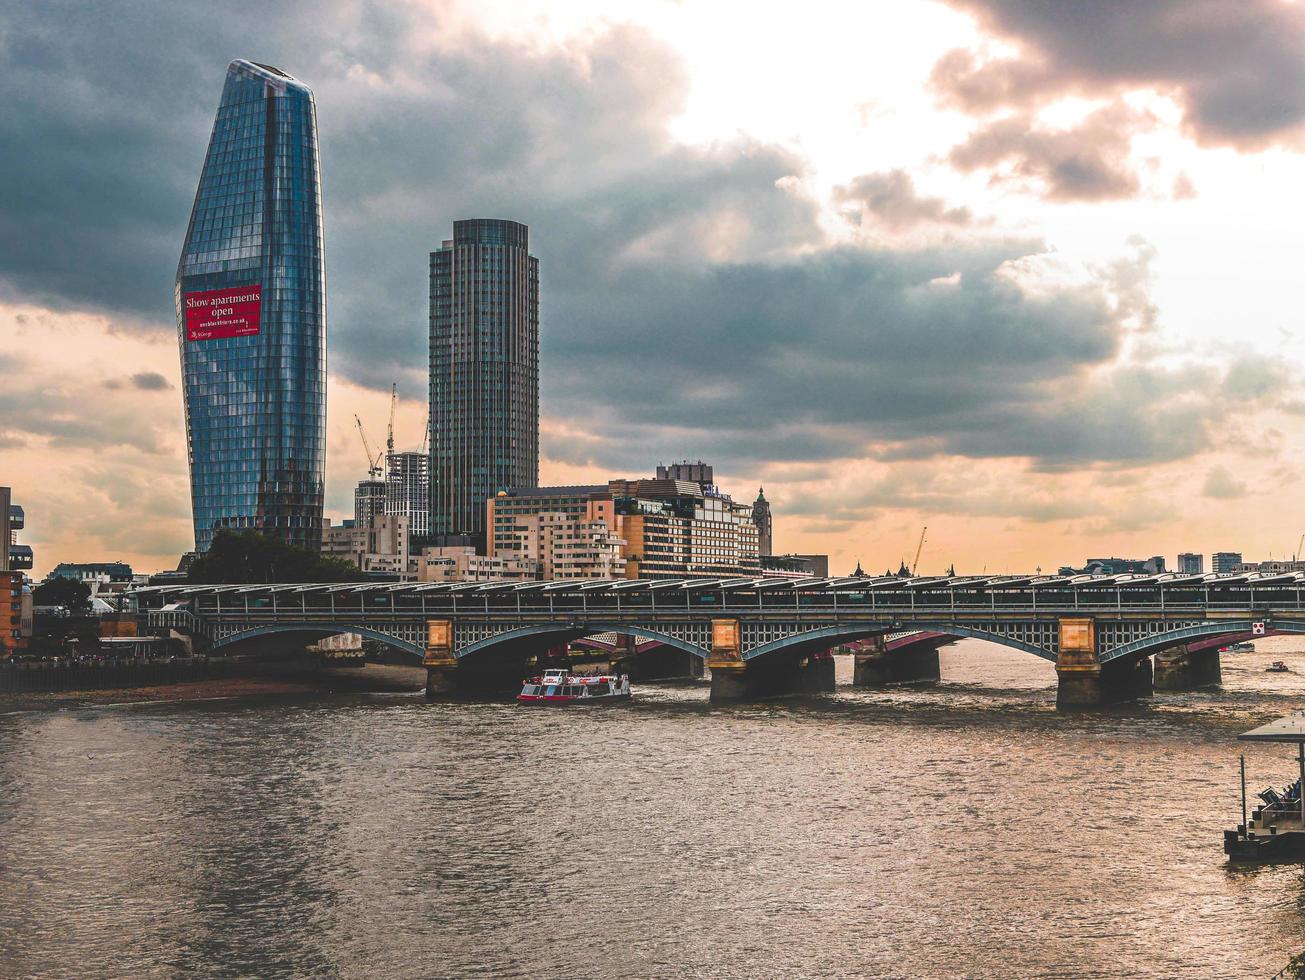 london, england, 20200 - utsikt över en bro i london vid solnedgången foto